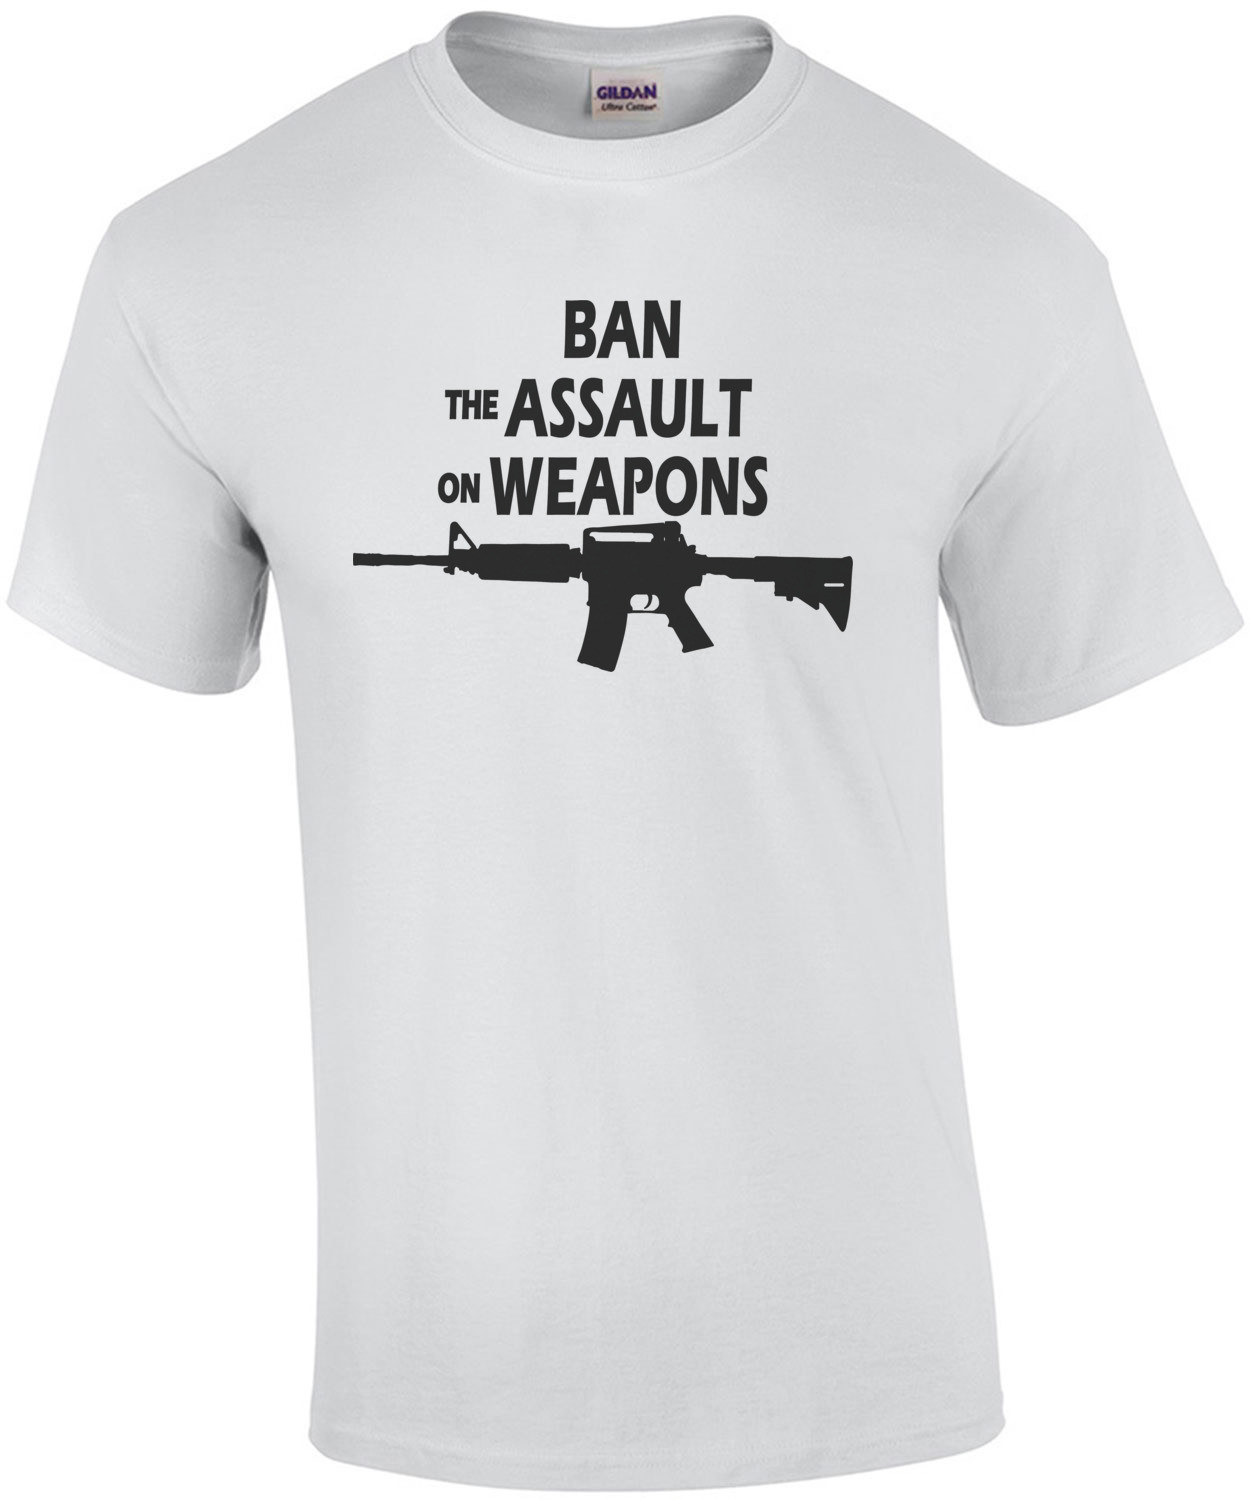 Ban the assault on weapons - Pro Gun T-Shirt